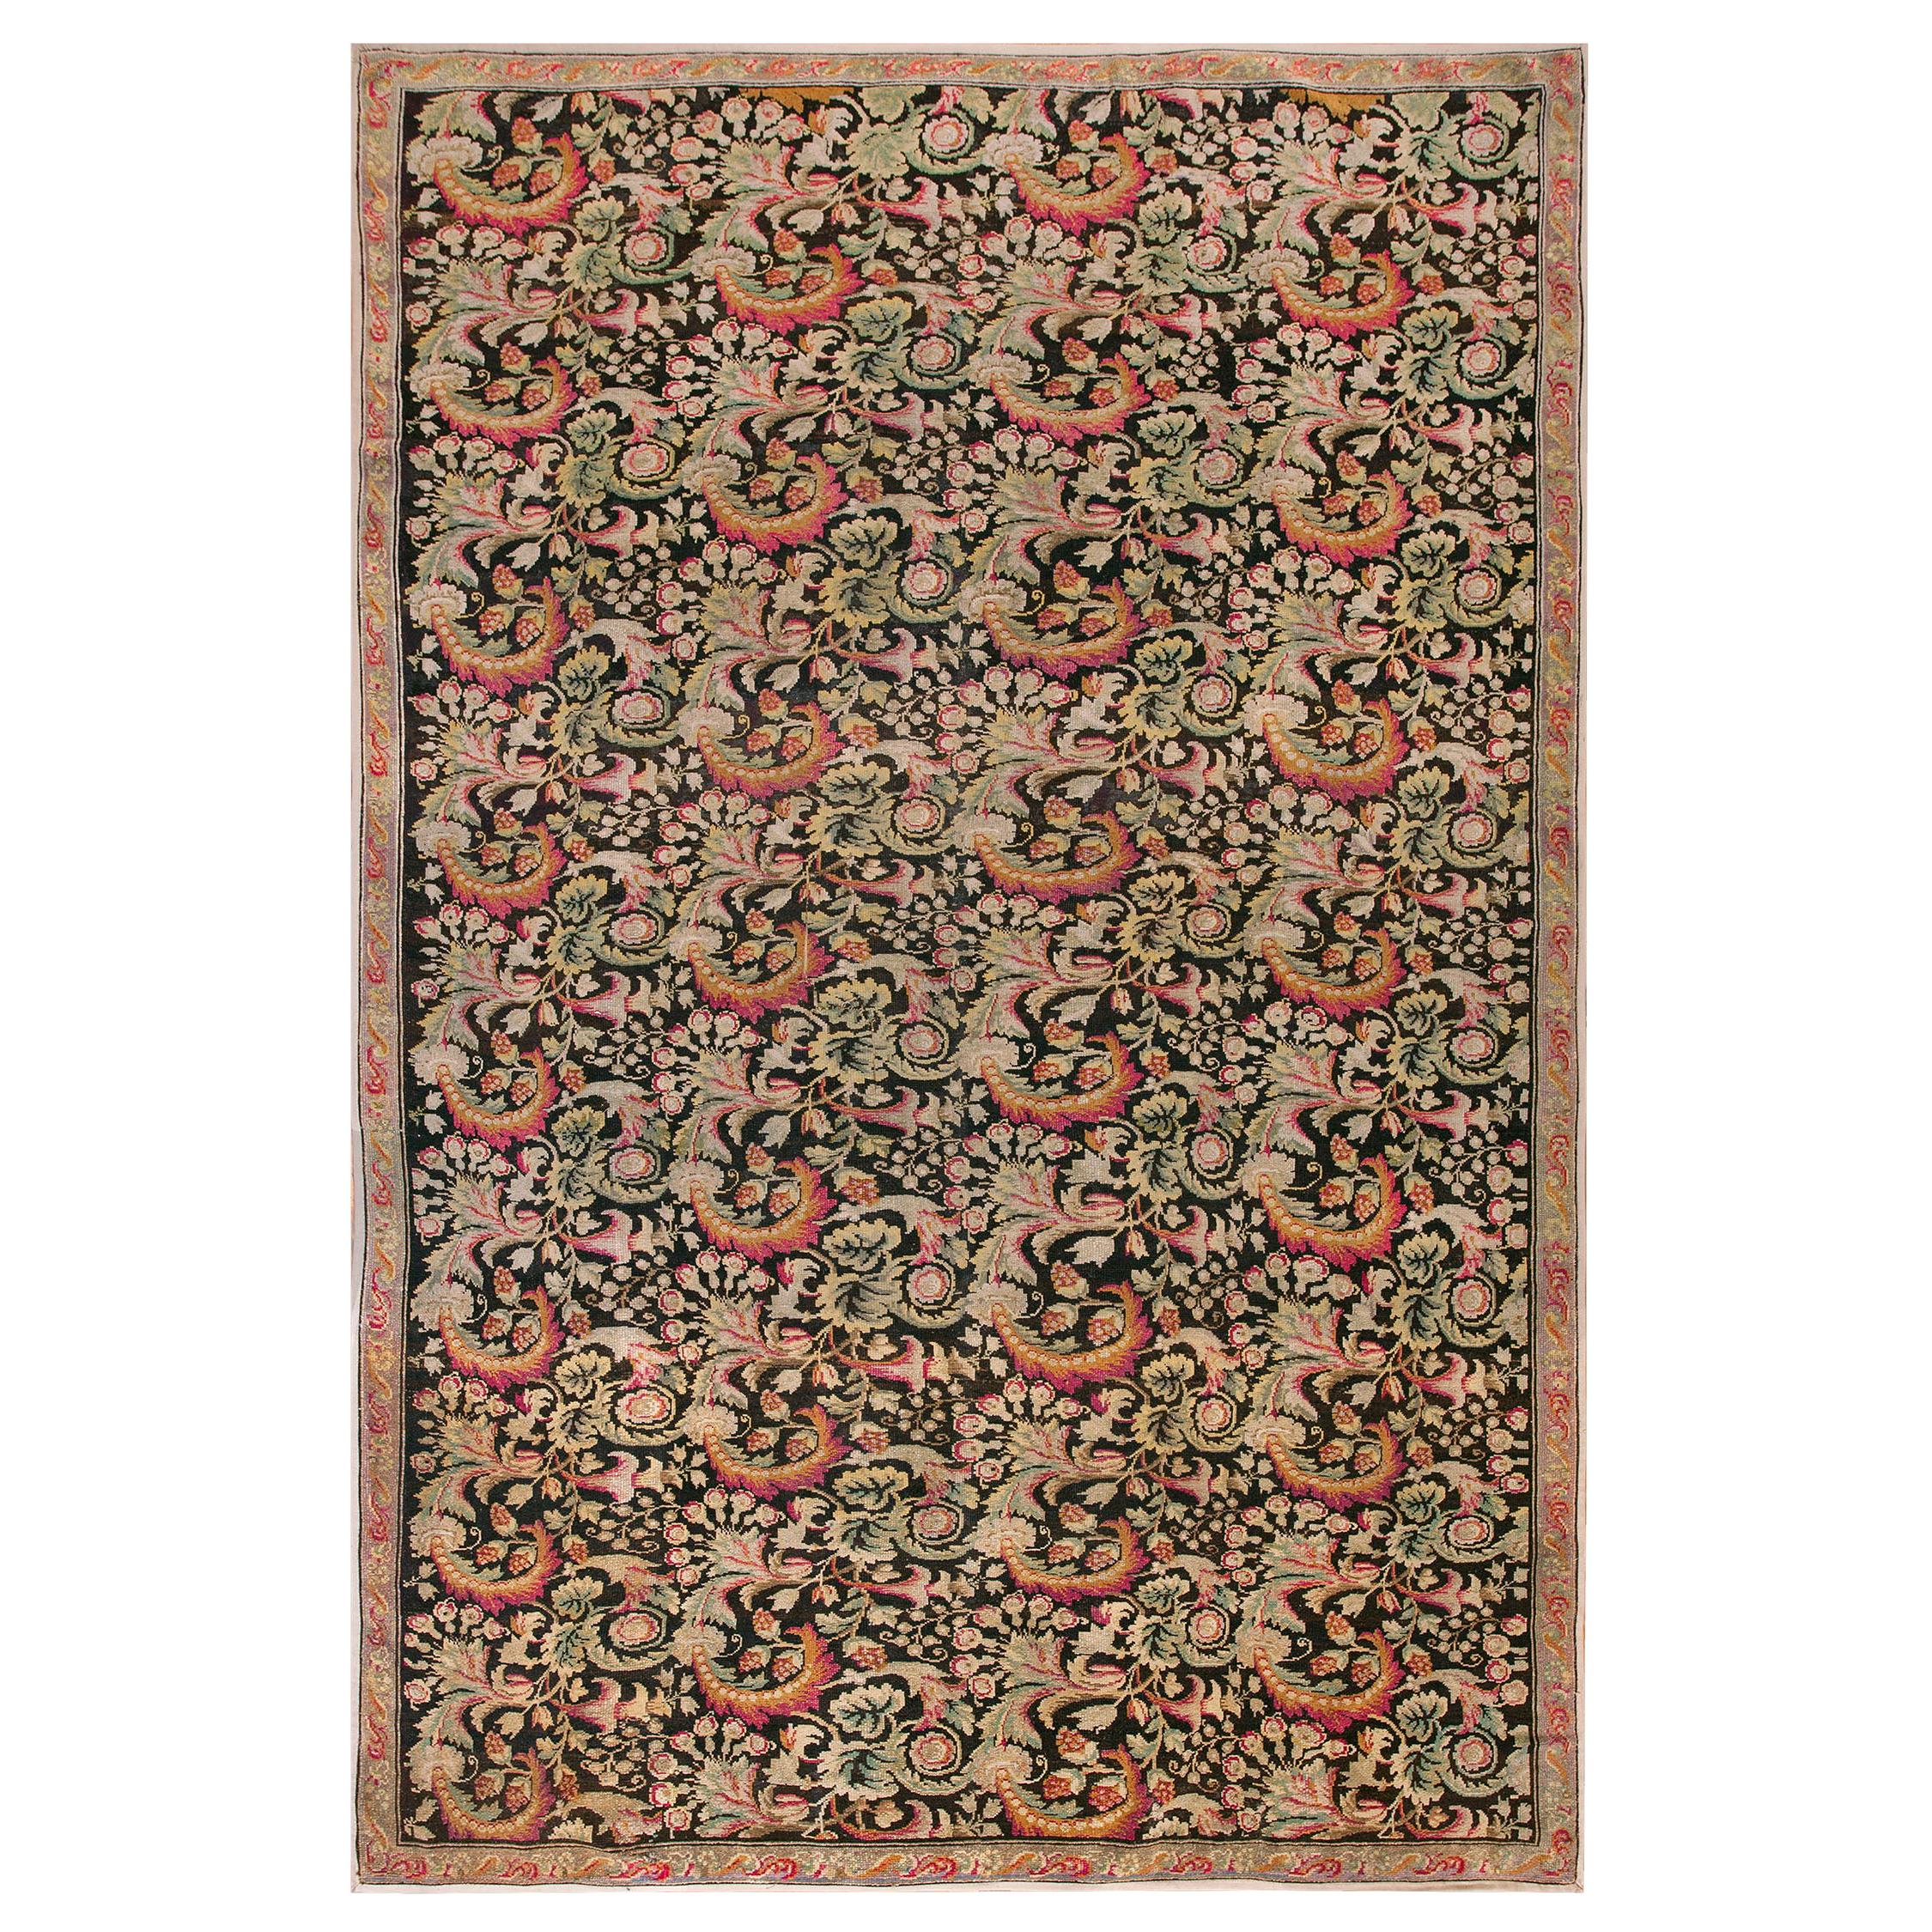 Mid 19th Century Ukrainian Carpet ( 7'9" x 11'9" - 236 x 358 cm ) For Sale